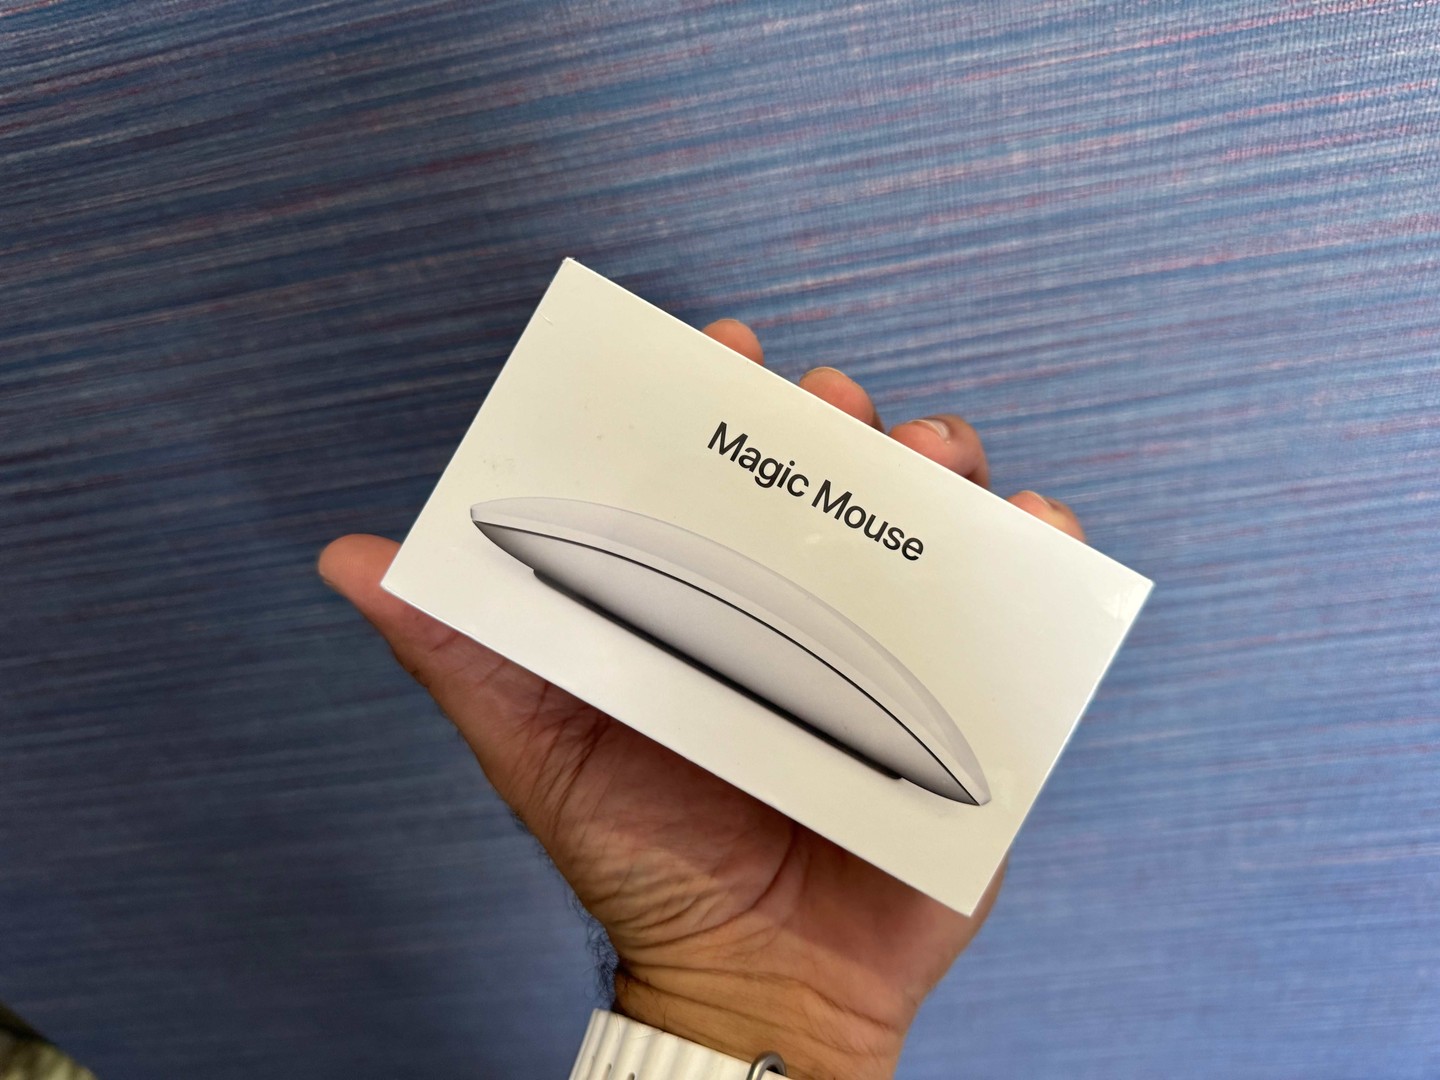 accesorios para electronica - Magic Mouse (2da Gen) Nuevos Sellados by Apple, Garantía, RD$ 6,800 NEG/TIENDA